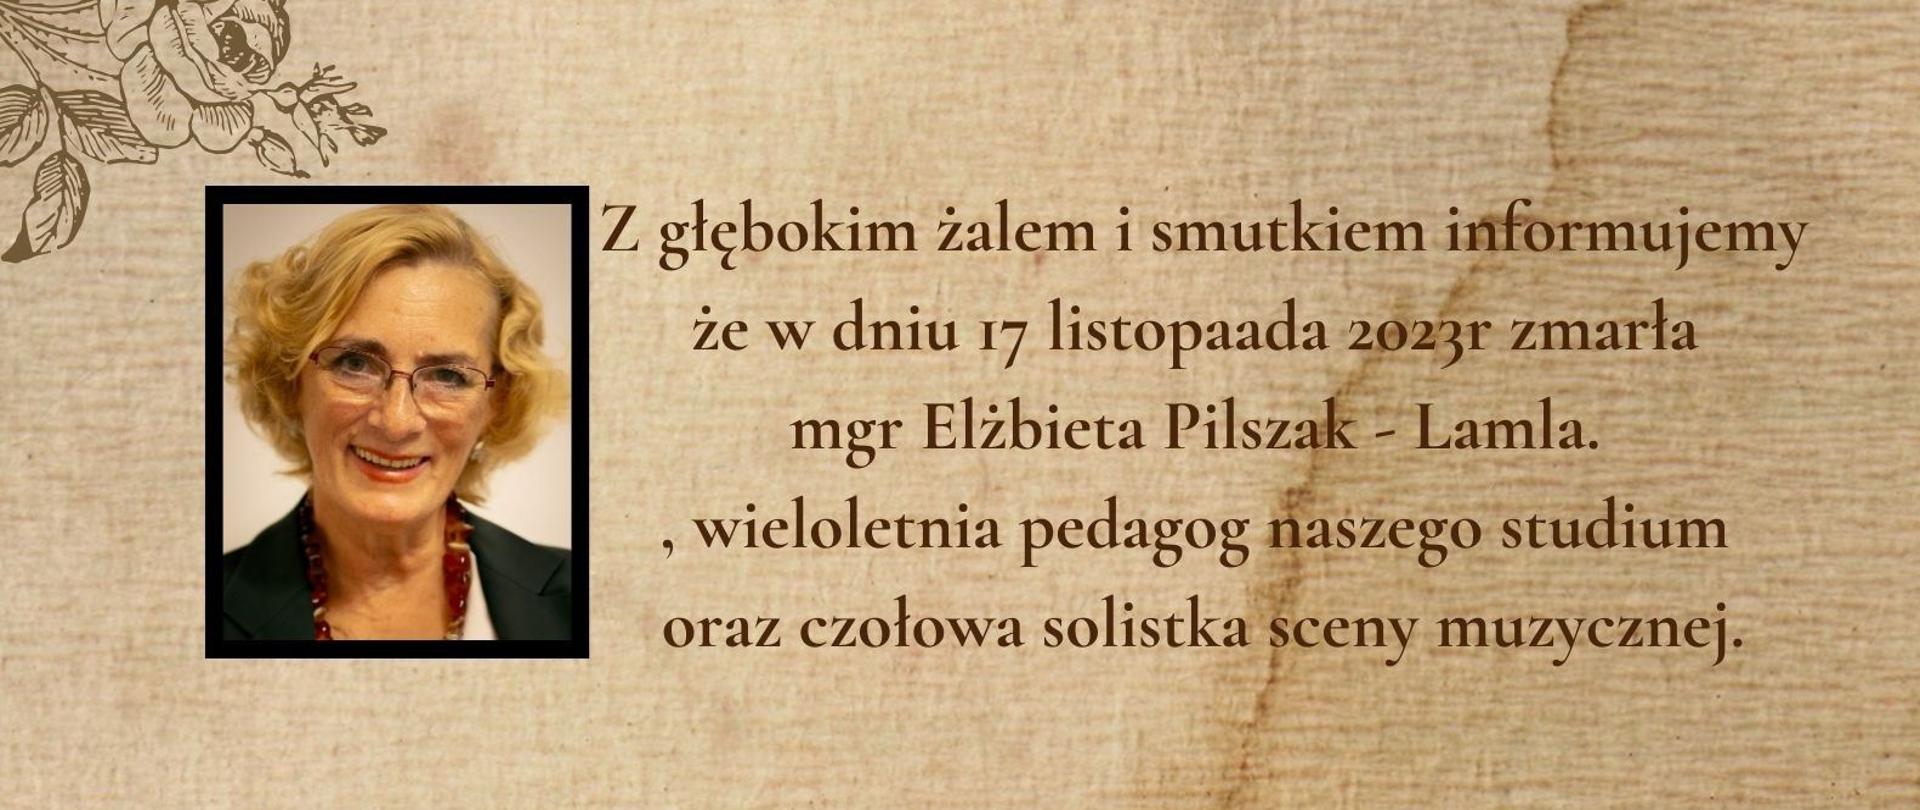 Informacja wraz ze zdjęciem o odejściu Elżbiety Pliszak-lamla w dniu 17.11.2023